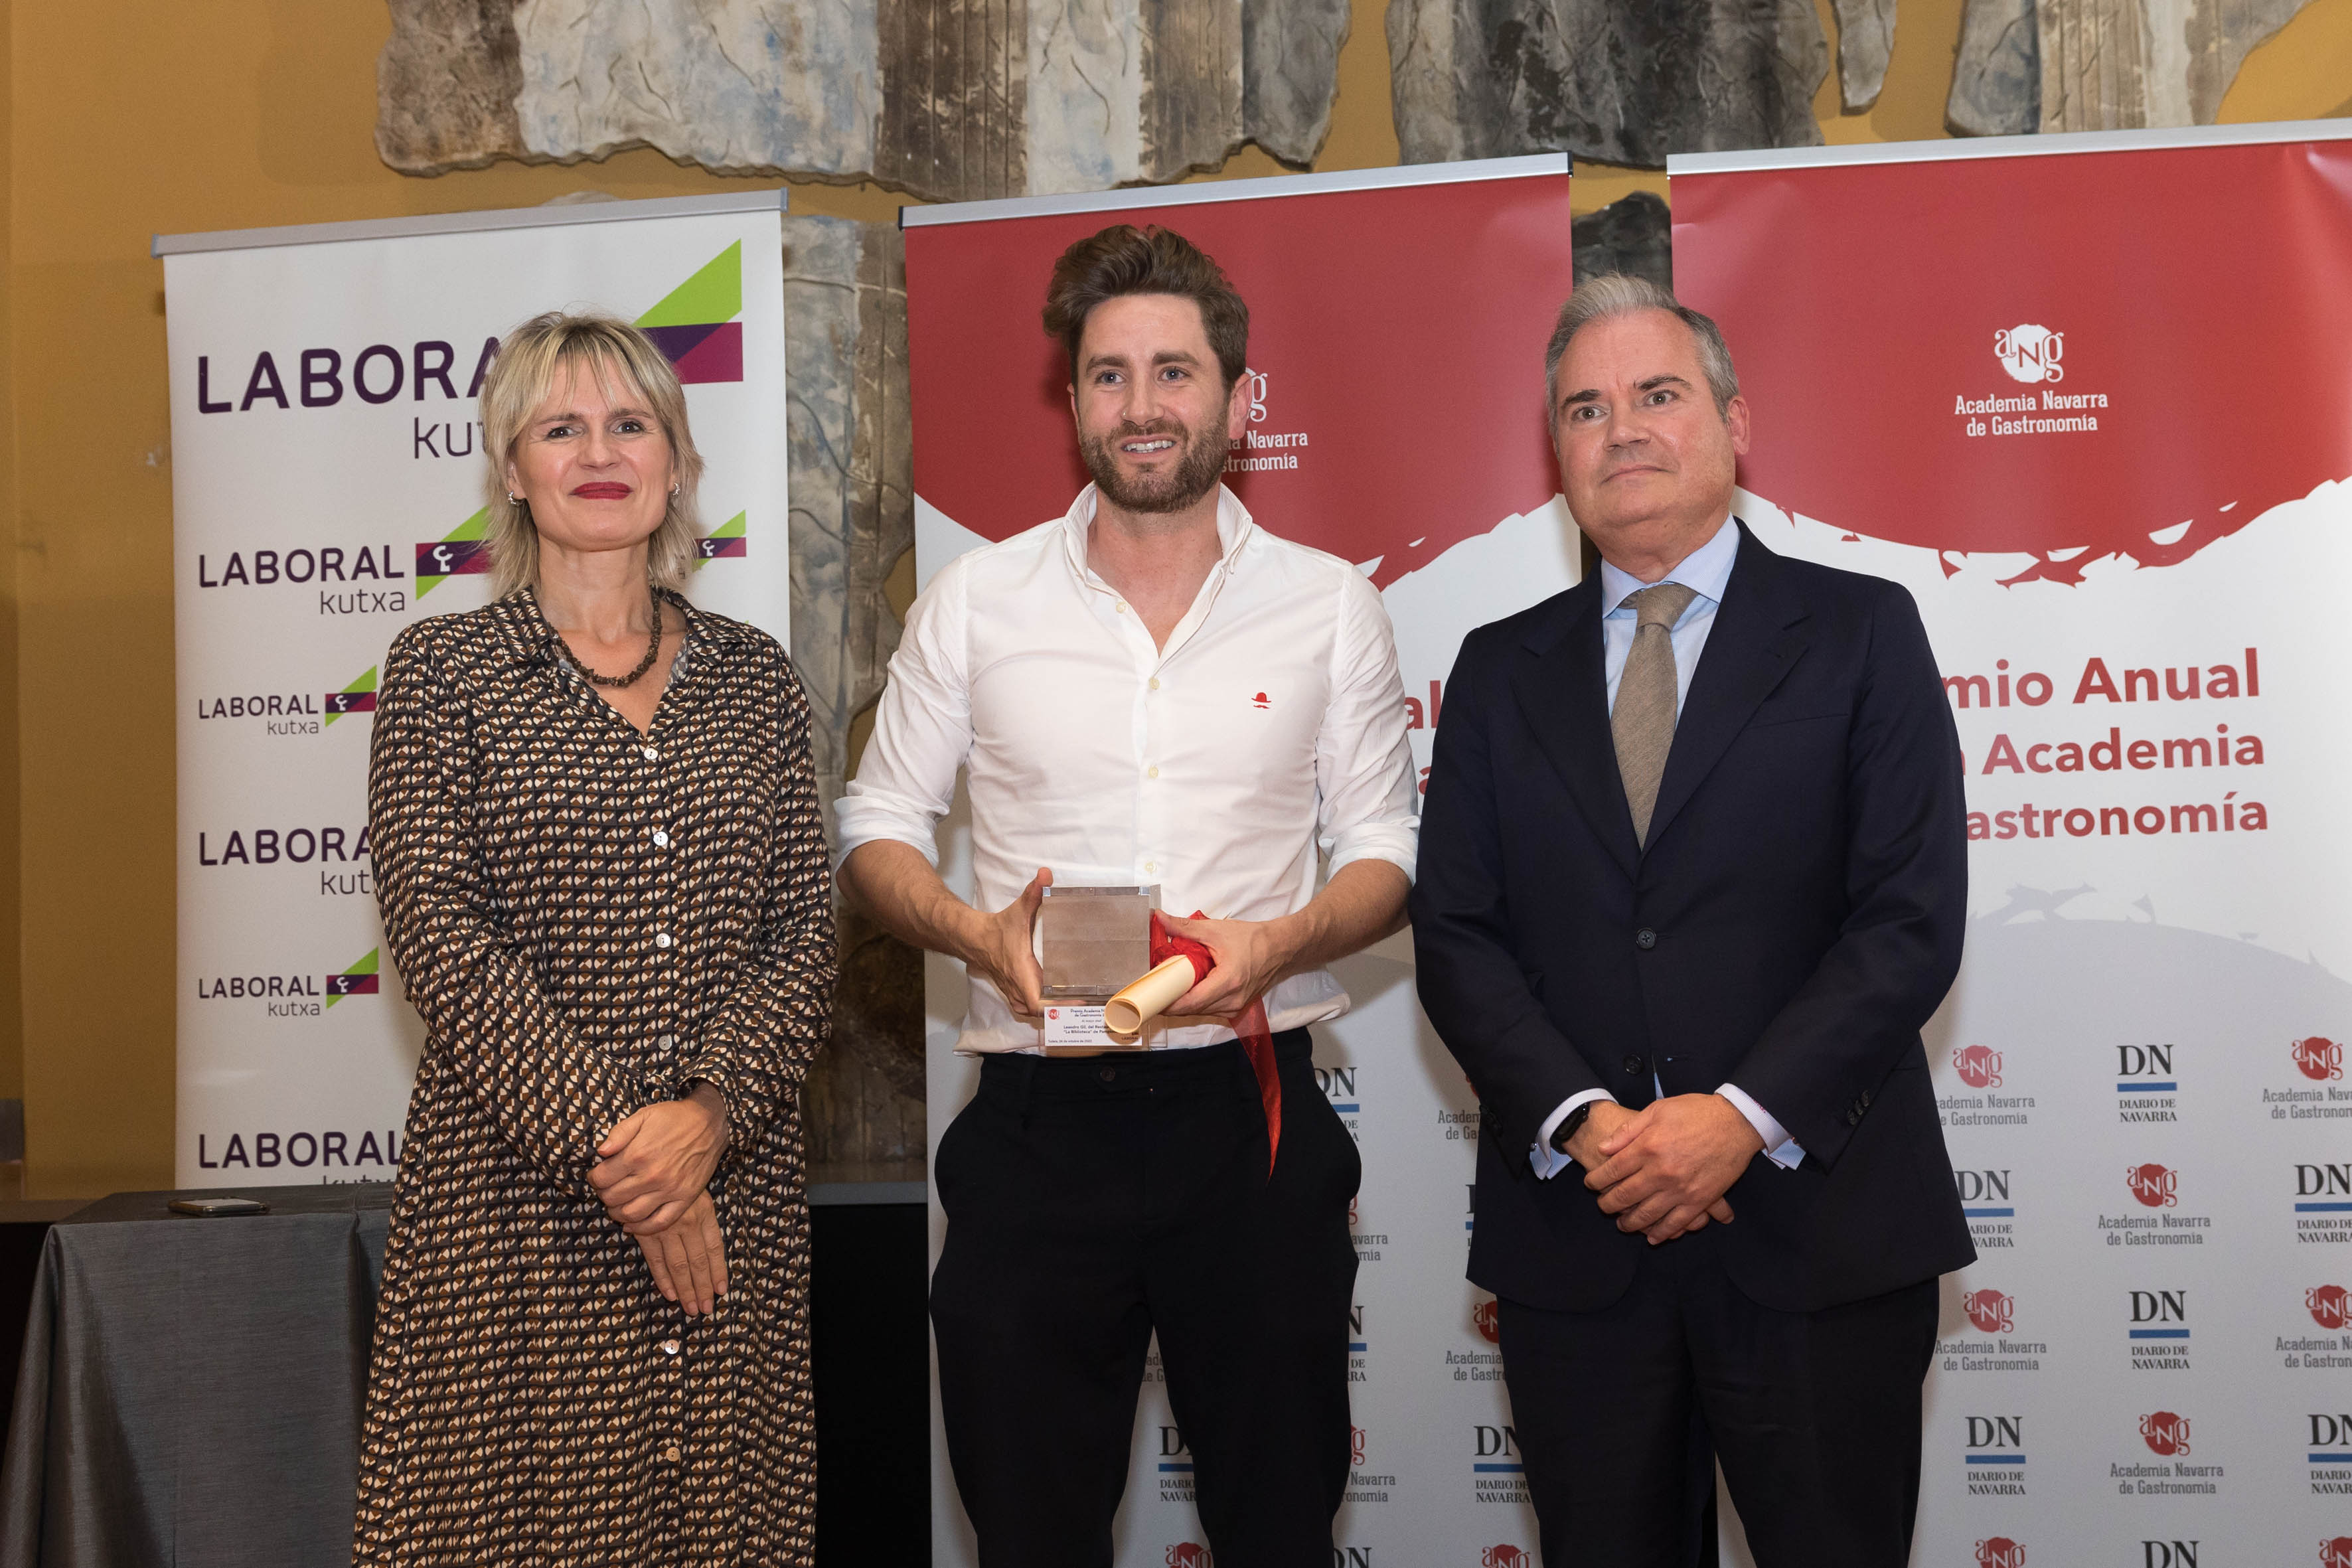 XIV Premio Anual de la Academia de Gastronomía para el chef Leandro Gil y las Fiestas de la Verdura de Tudela y la Ribera de Navarra